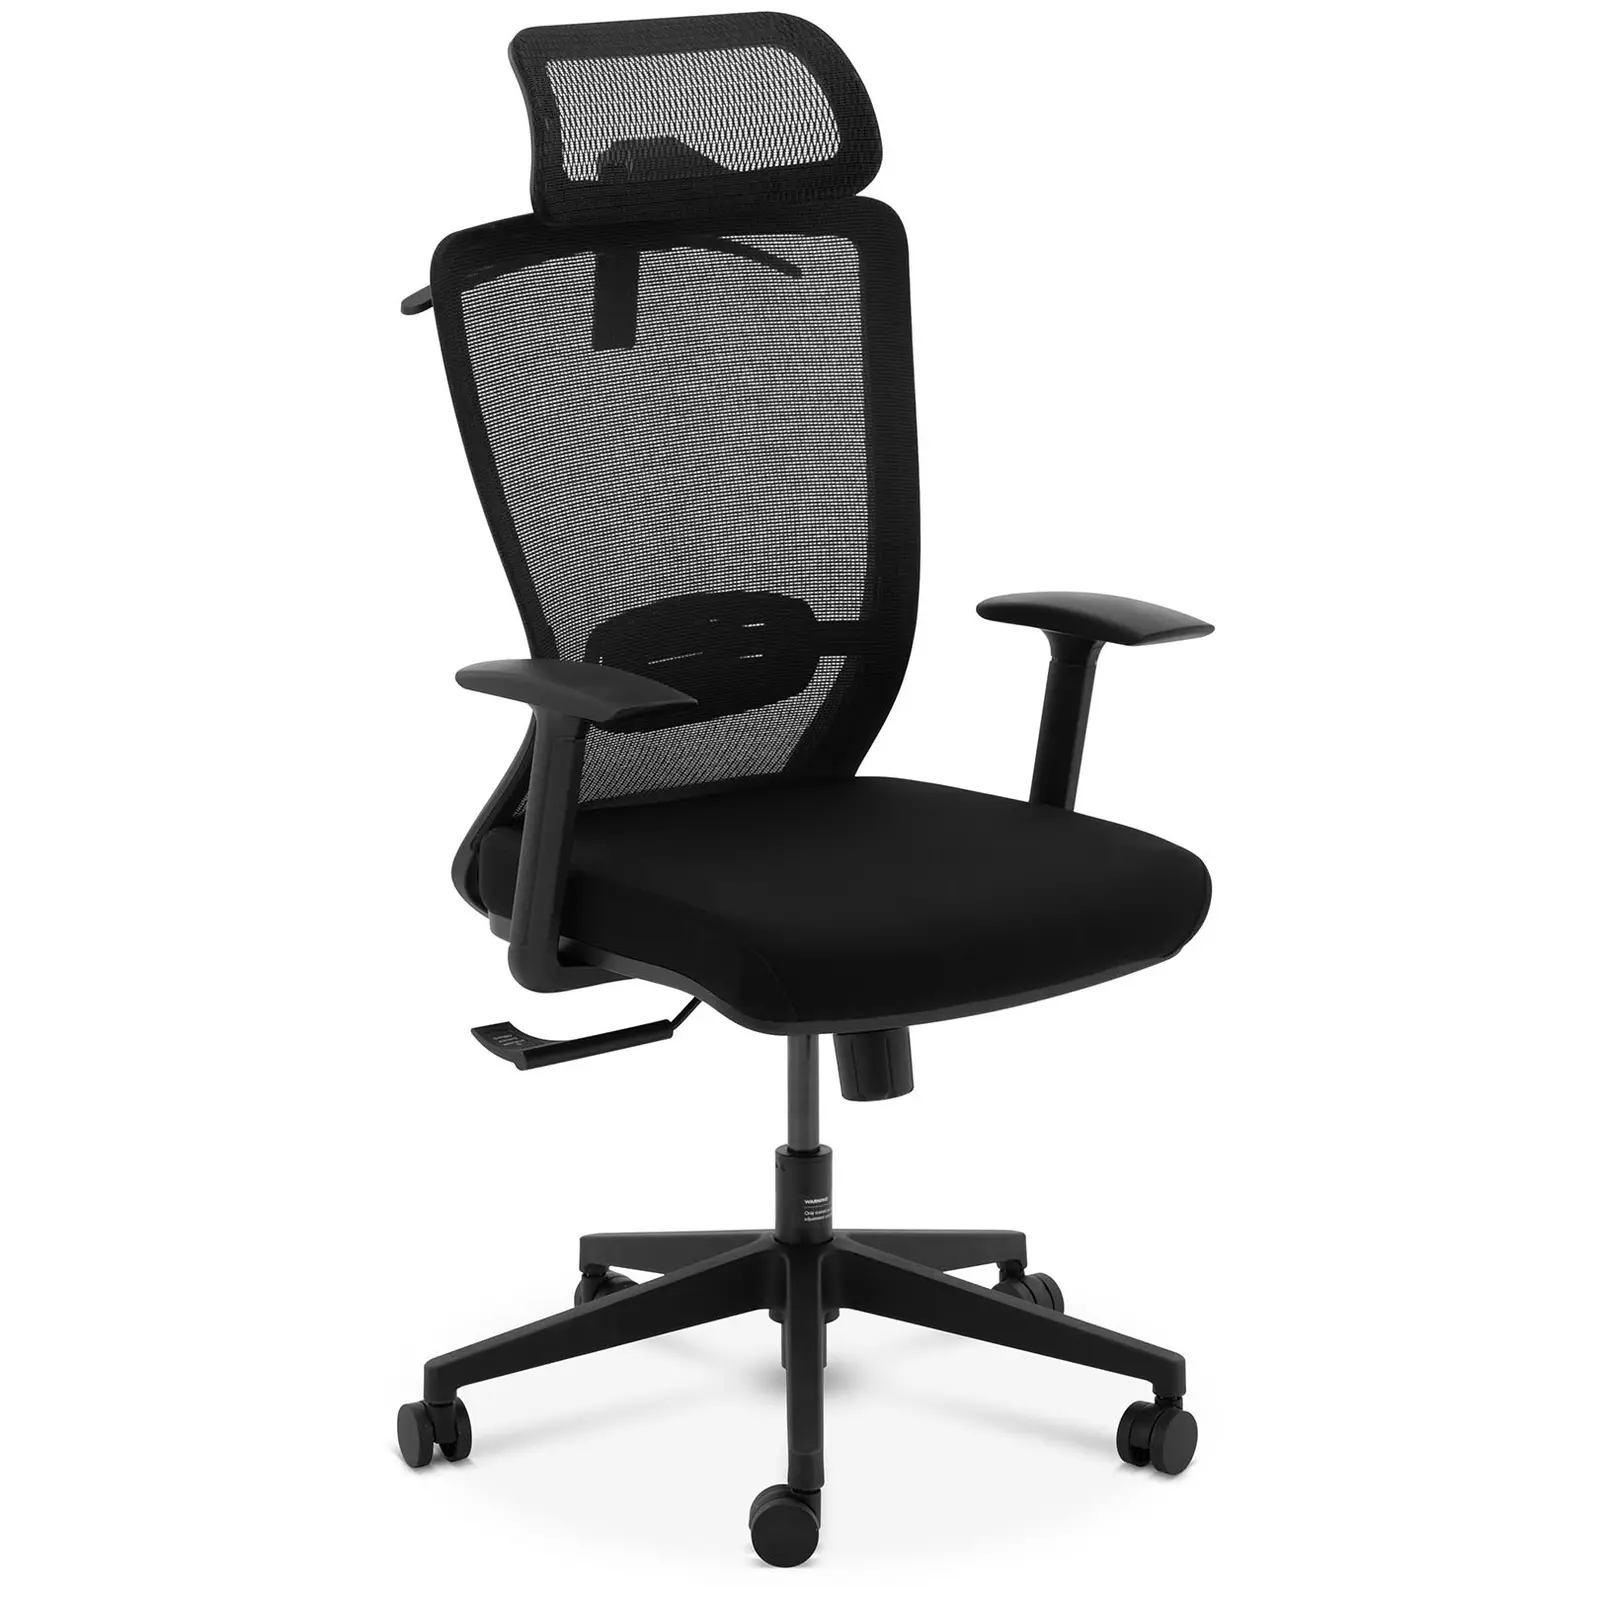 Outlet Fotel biurowy - oparcie z siatki - zagłówek - siedzisko 50 x 50 cm - do 150 kg - czarny